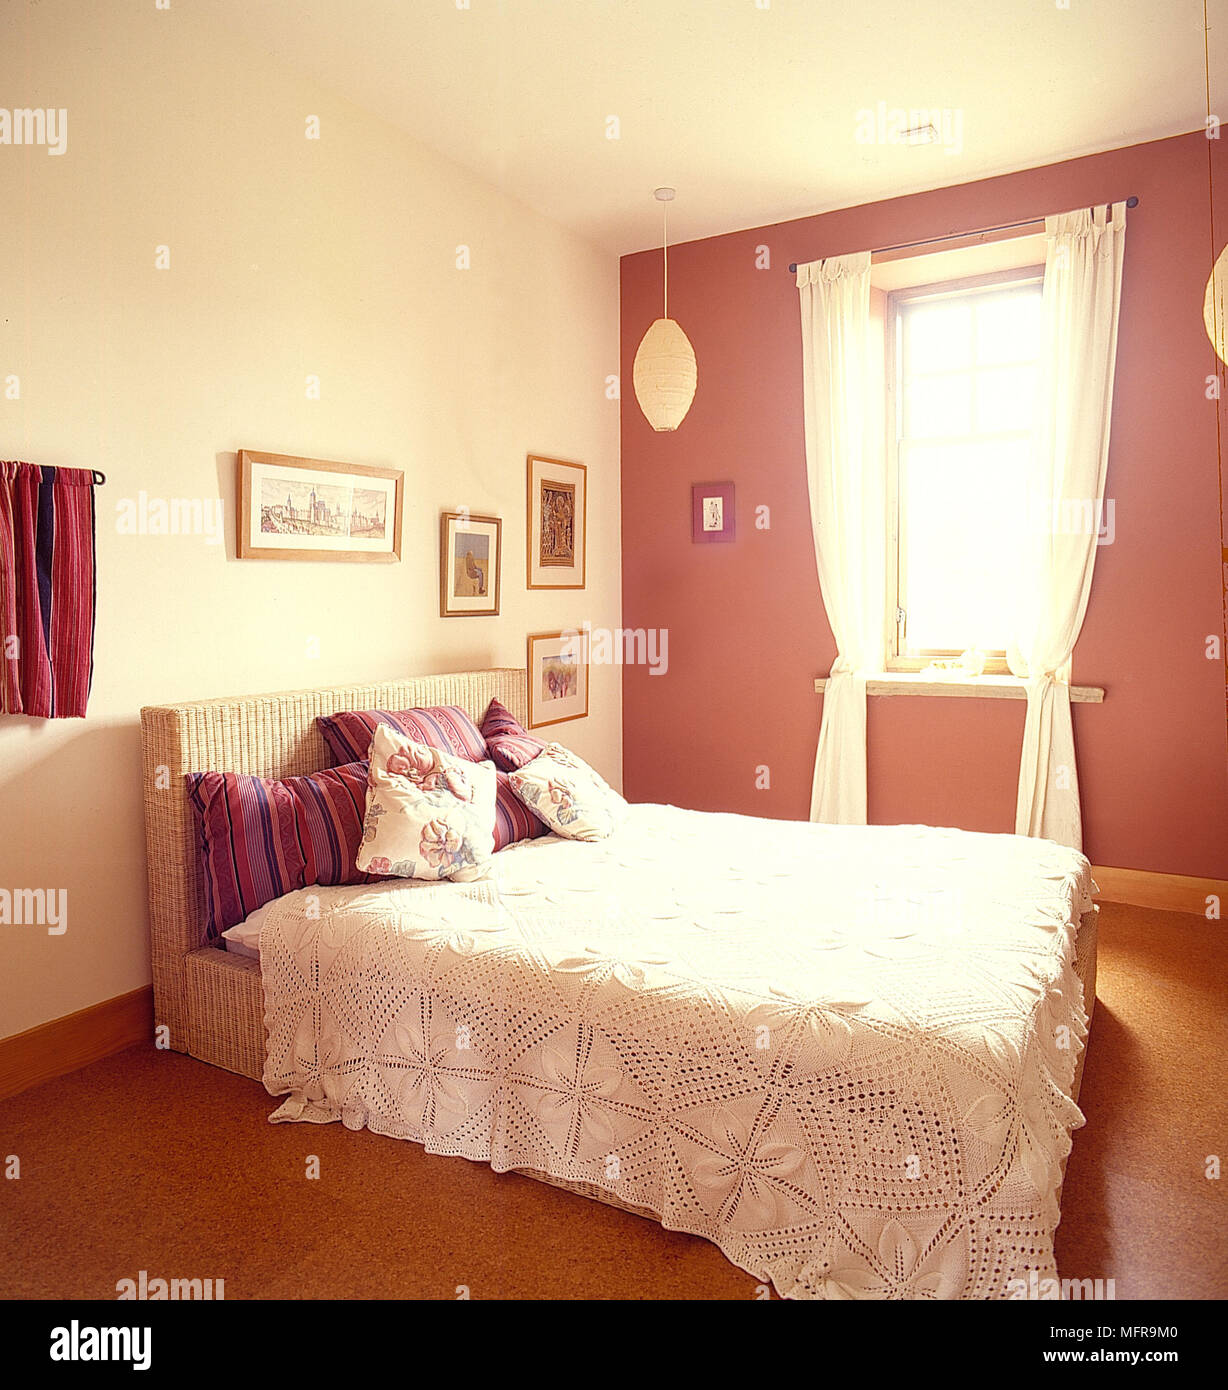 Chambre pays neutre et des murs roses couvre-lit blanc coussins coussins à motifs d'images encadrées, la lumière de la fenêtre Spotlight encastré au plafond Banque D'Images